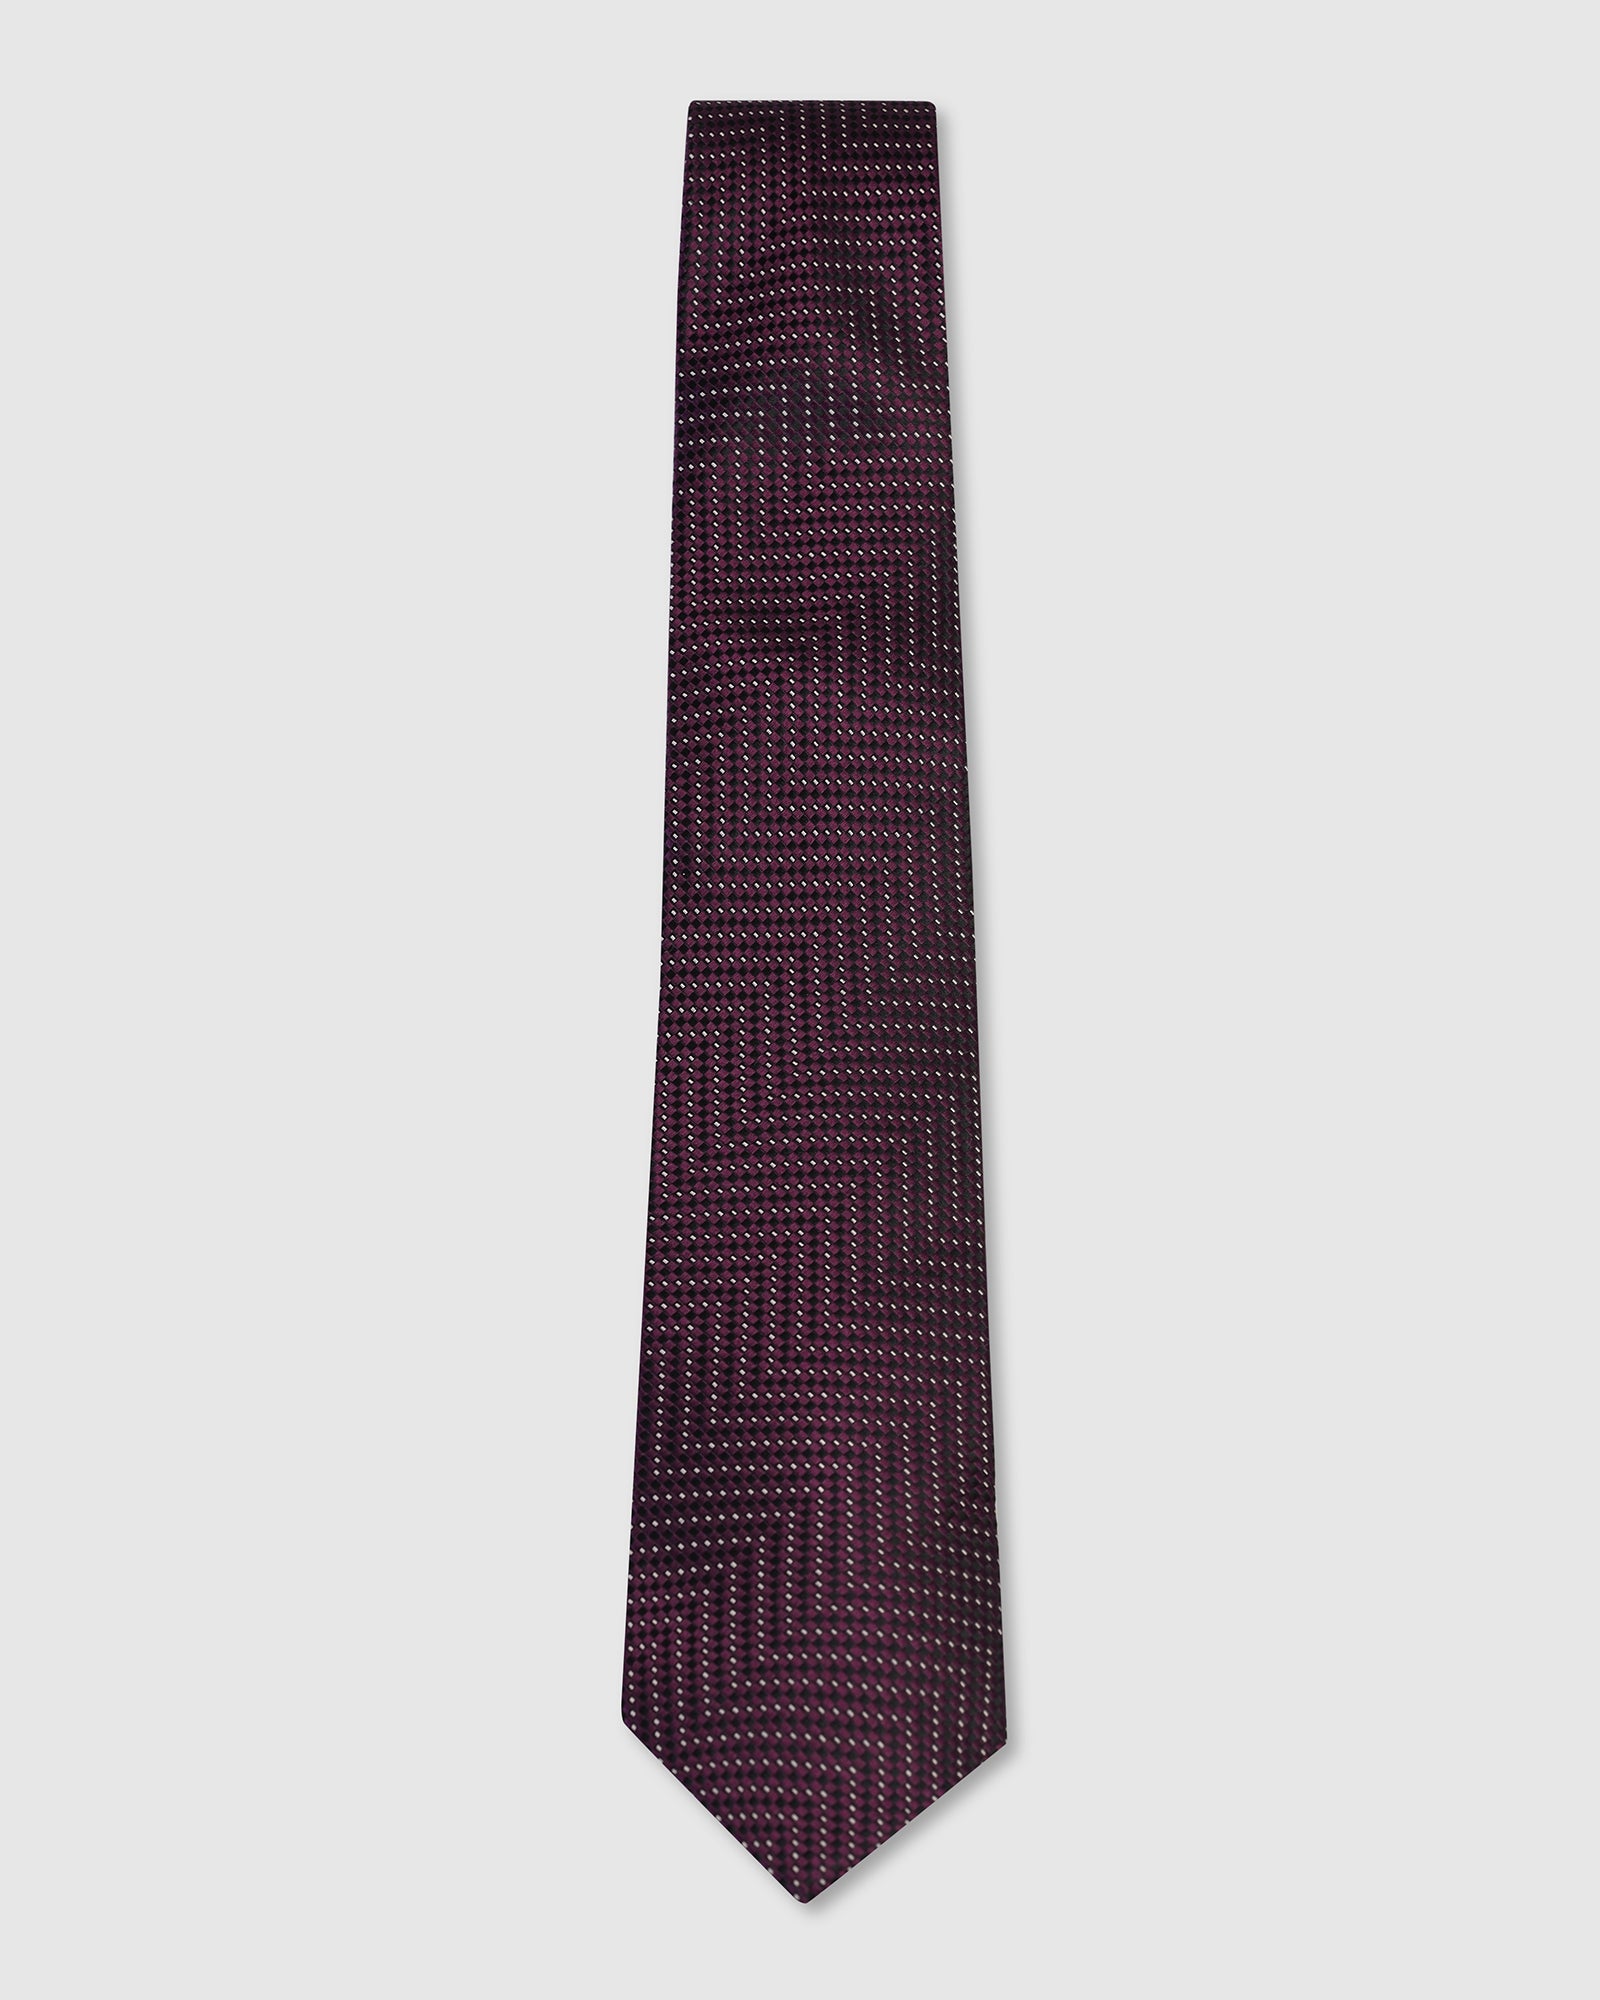 Silk Dark Purple Printed Tie - Valdimir